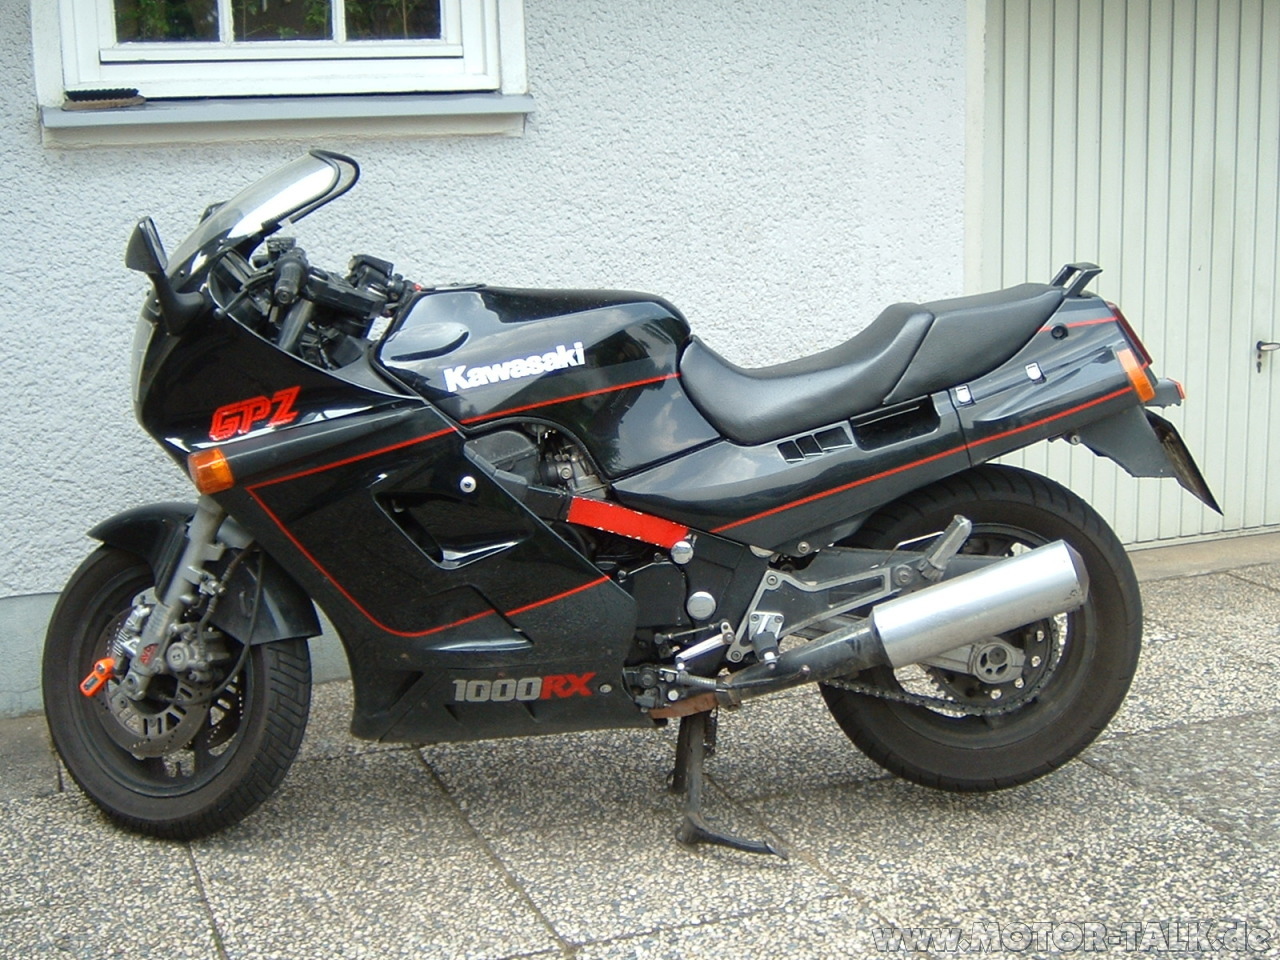 Kawasaki GPZ1000RX #6